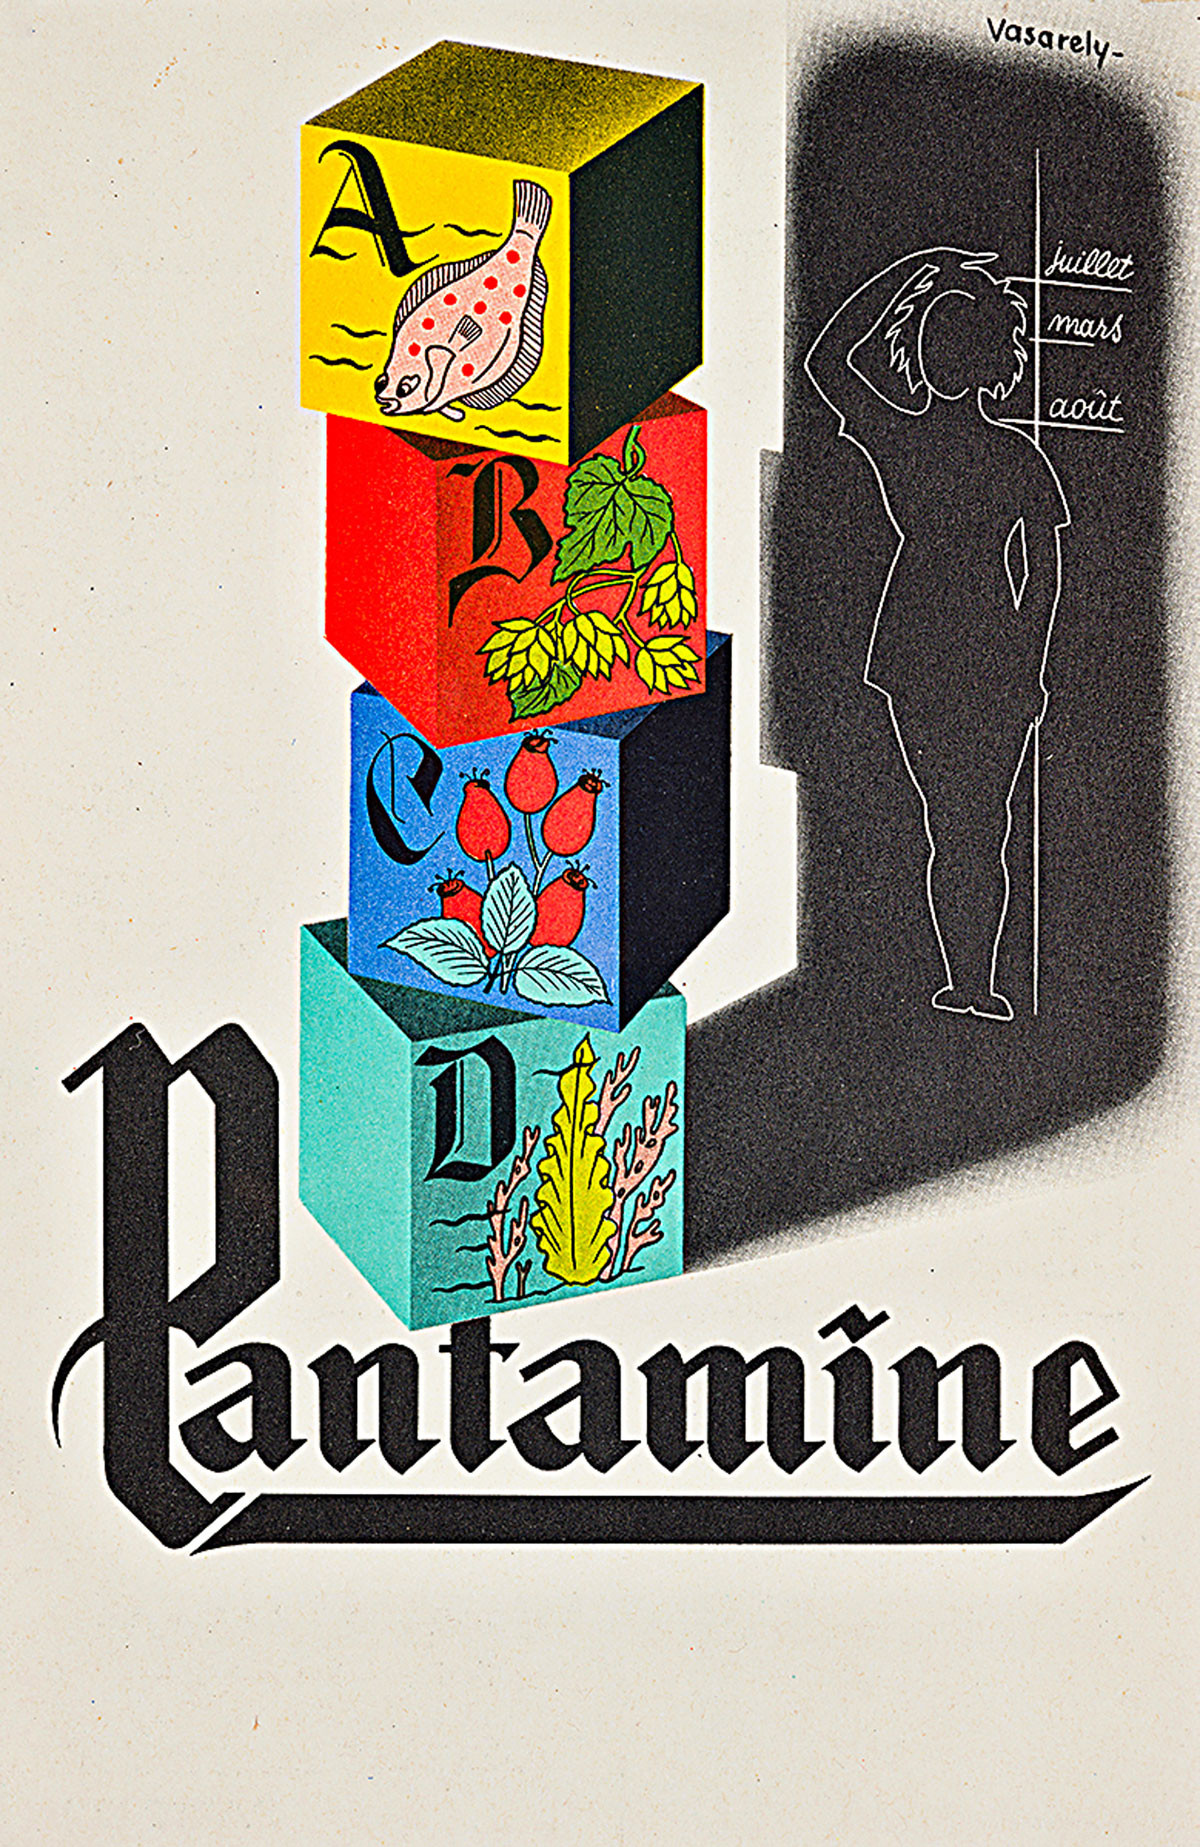 Victor Vasarely plakátokat is tervezett, ez az egyik munkája, amely most a múzeumba került